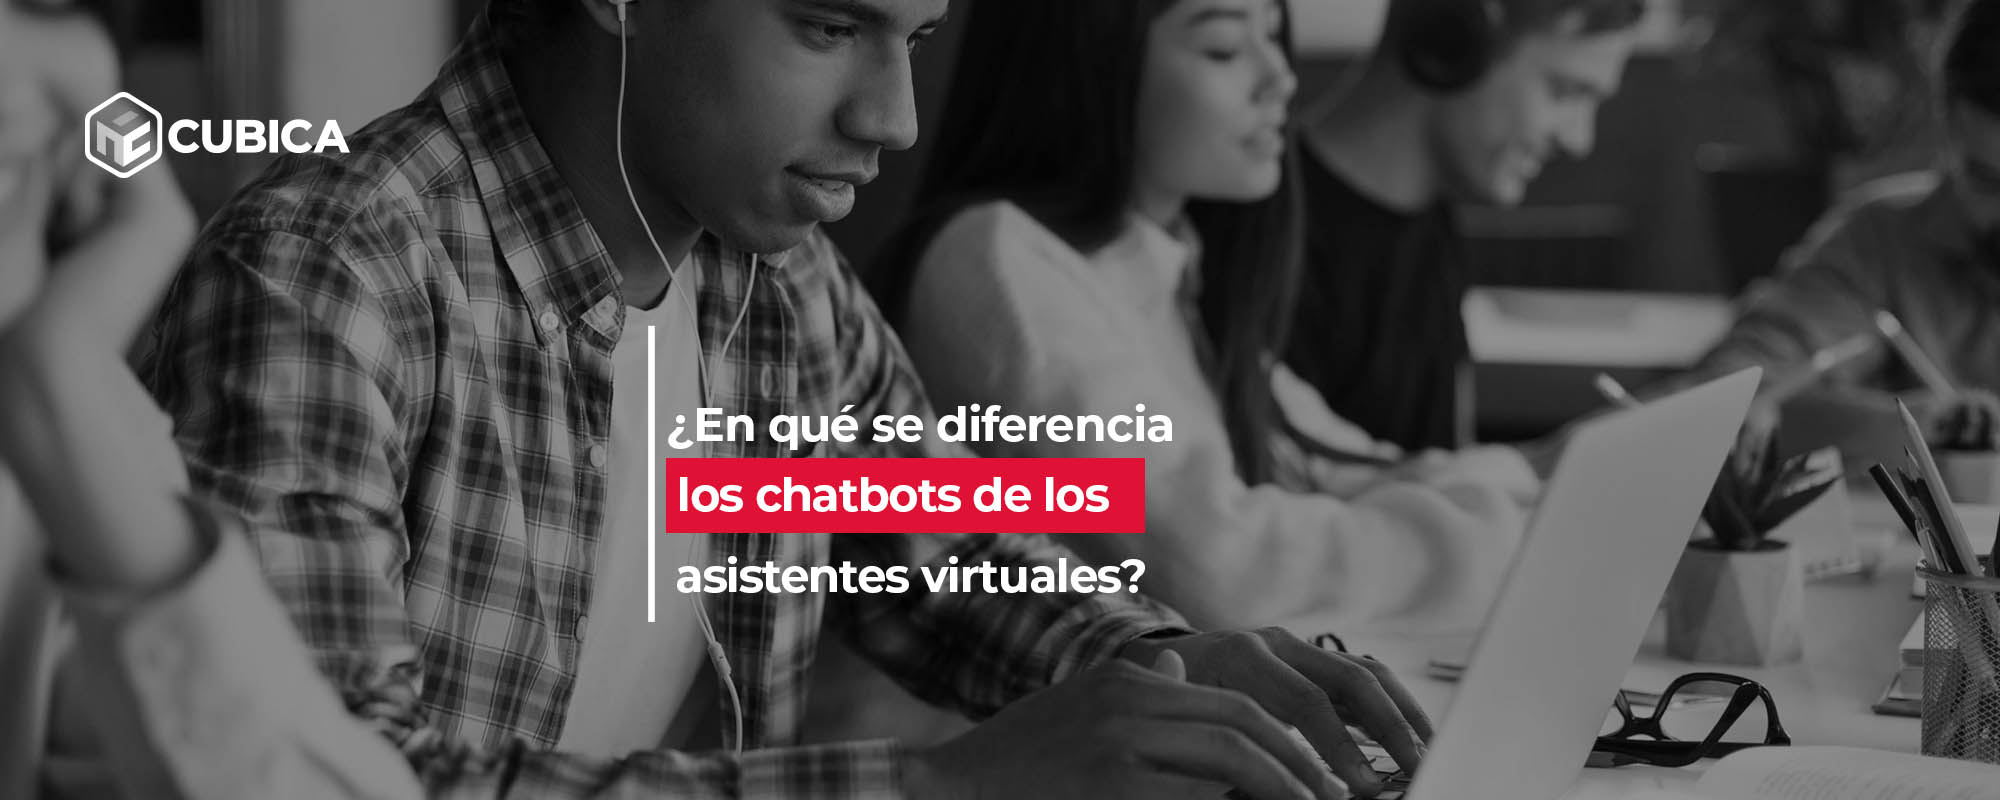 ¿En qué se diferencian los chatbots de los asistentes virtuales?